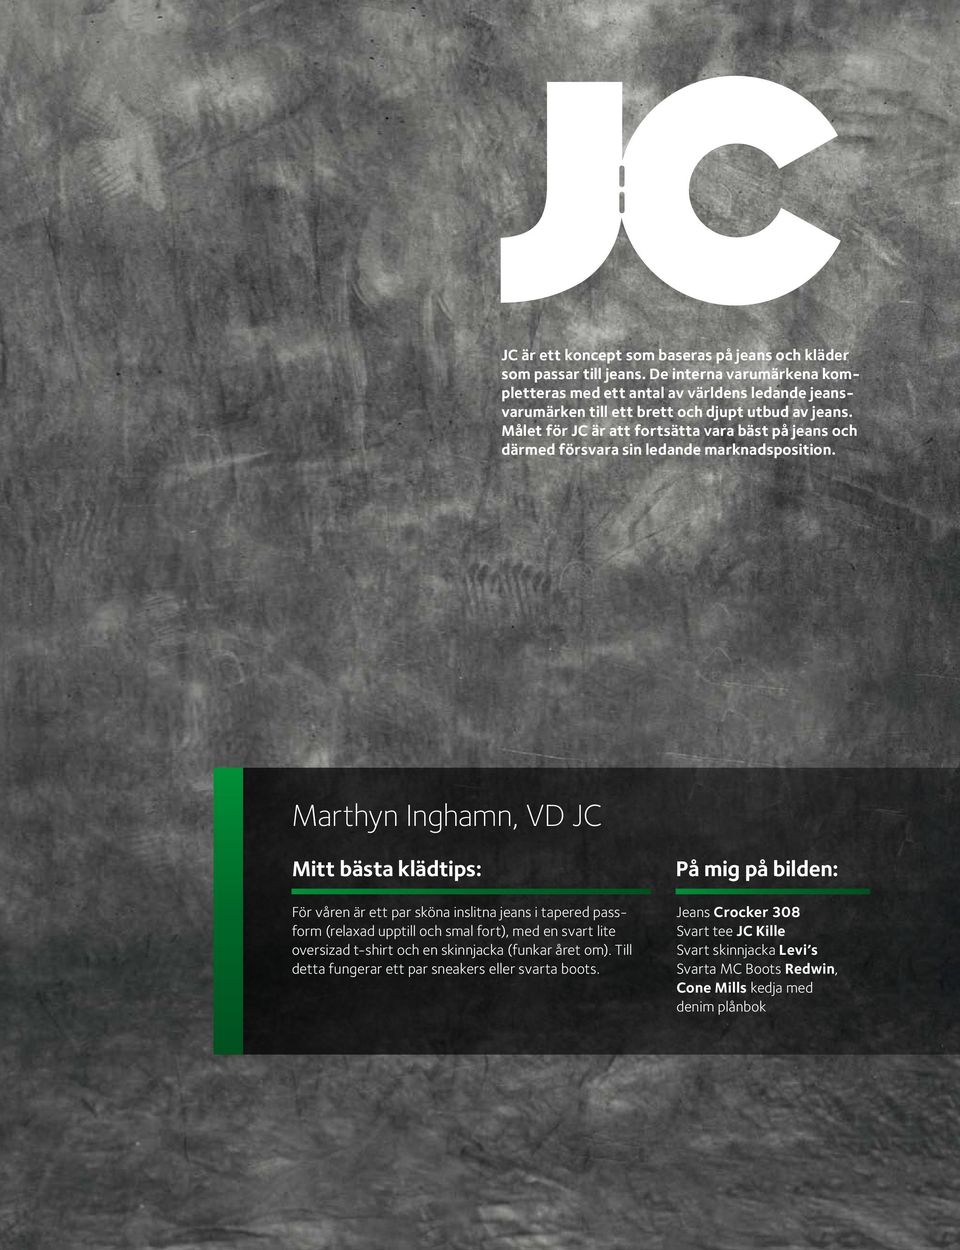 Målet för JC är att fortsätta vara bäst på jeans och därmed försvara sin ledande marknadsposition.